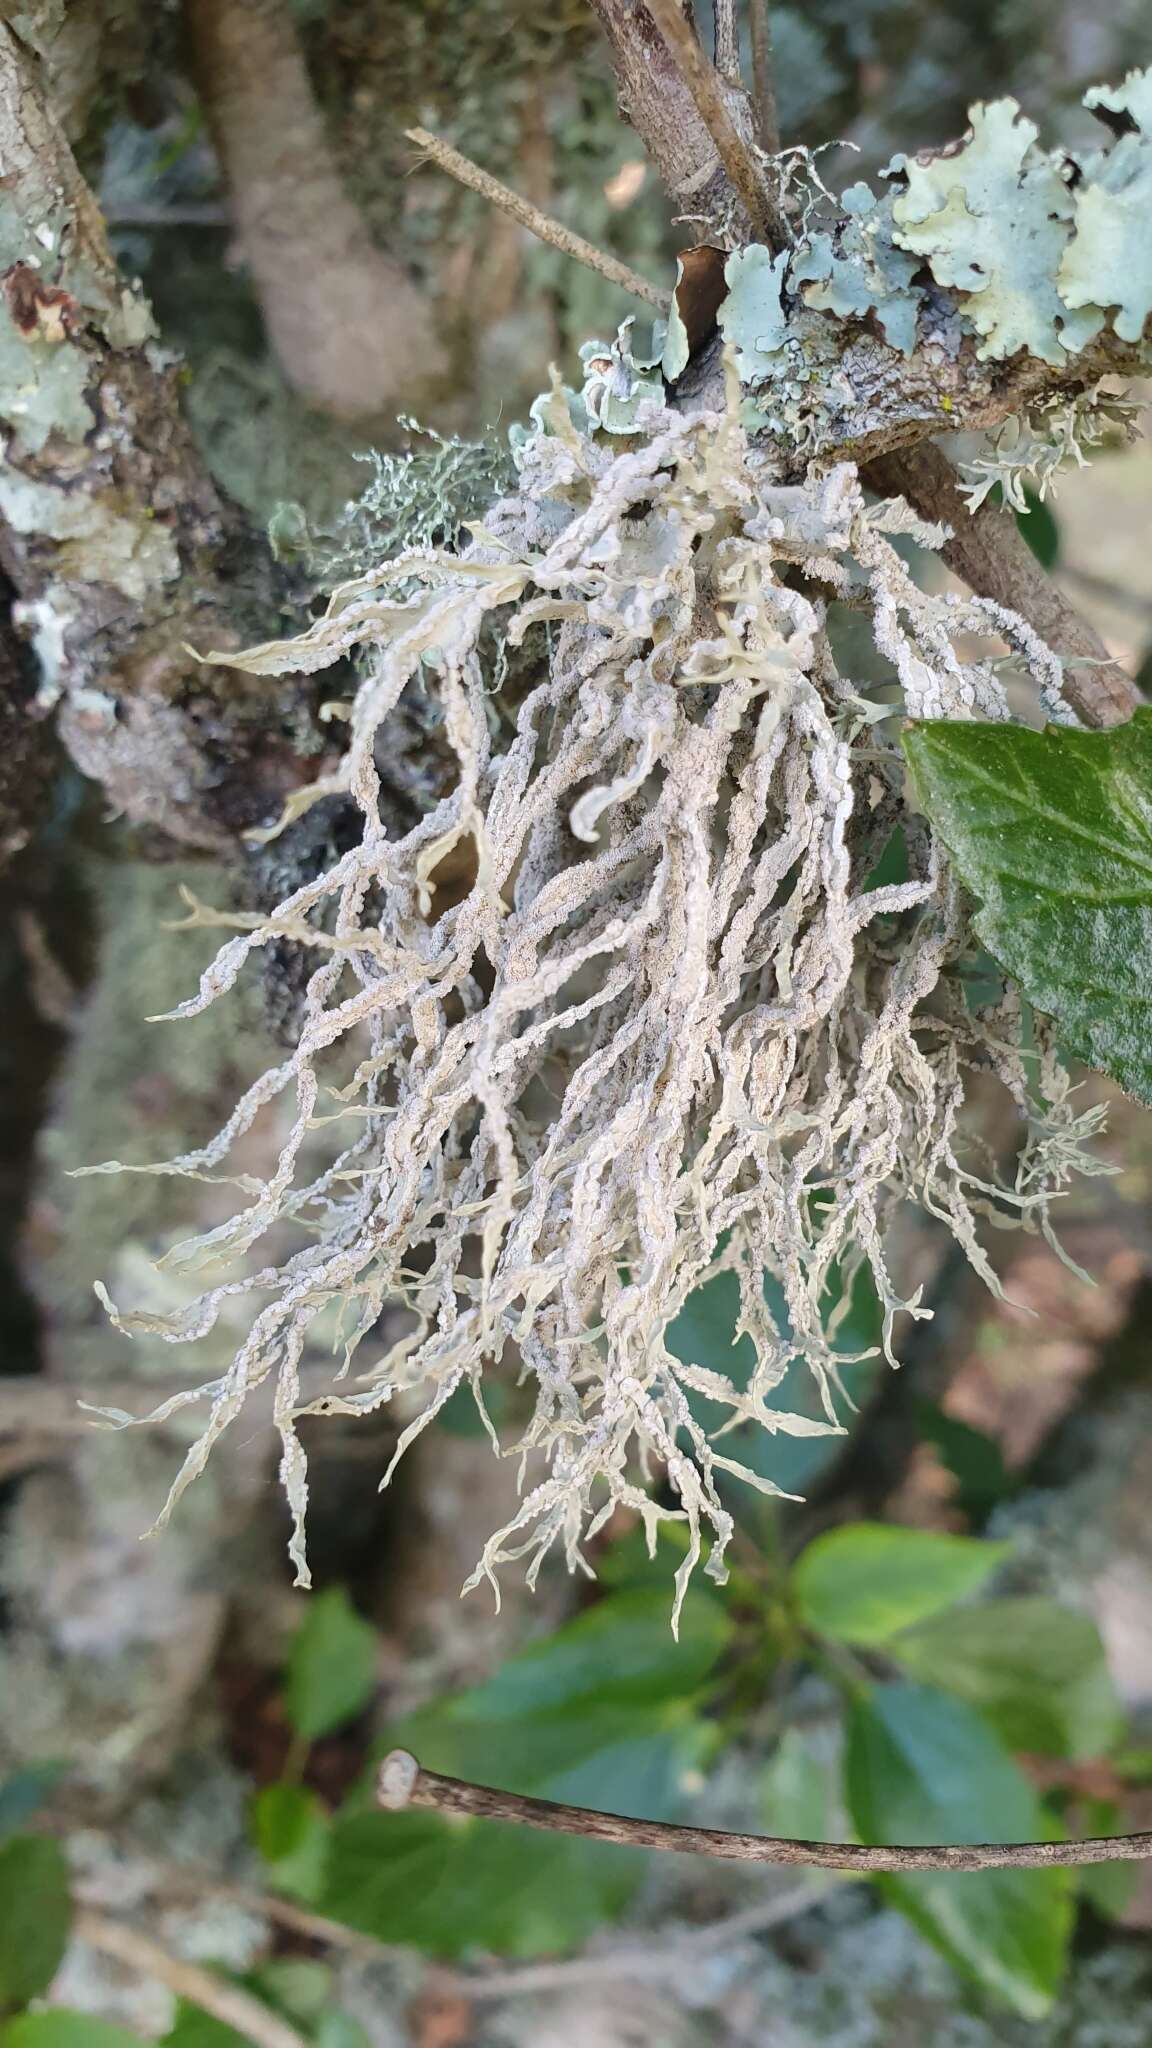 Image of Montagne's roccella lichen